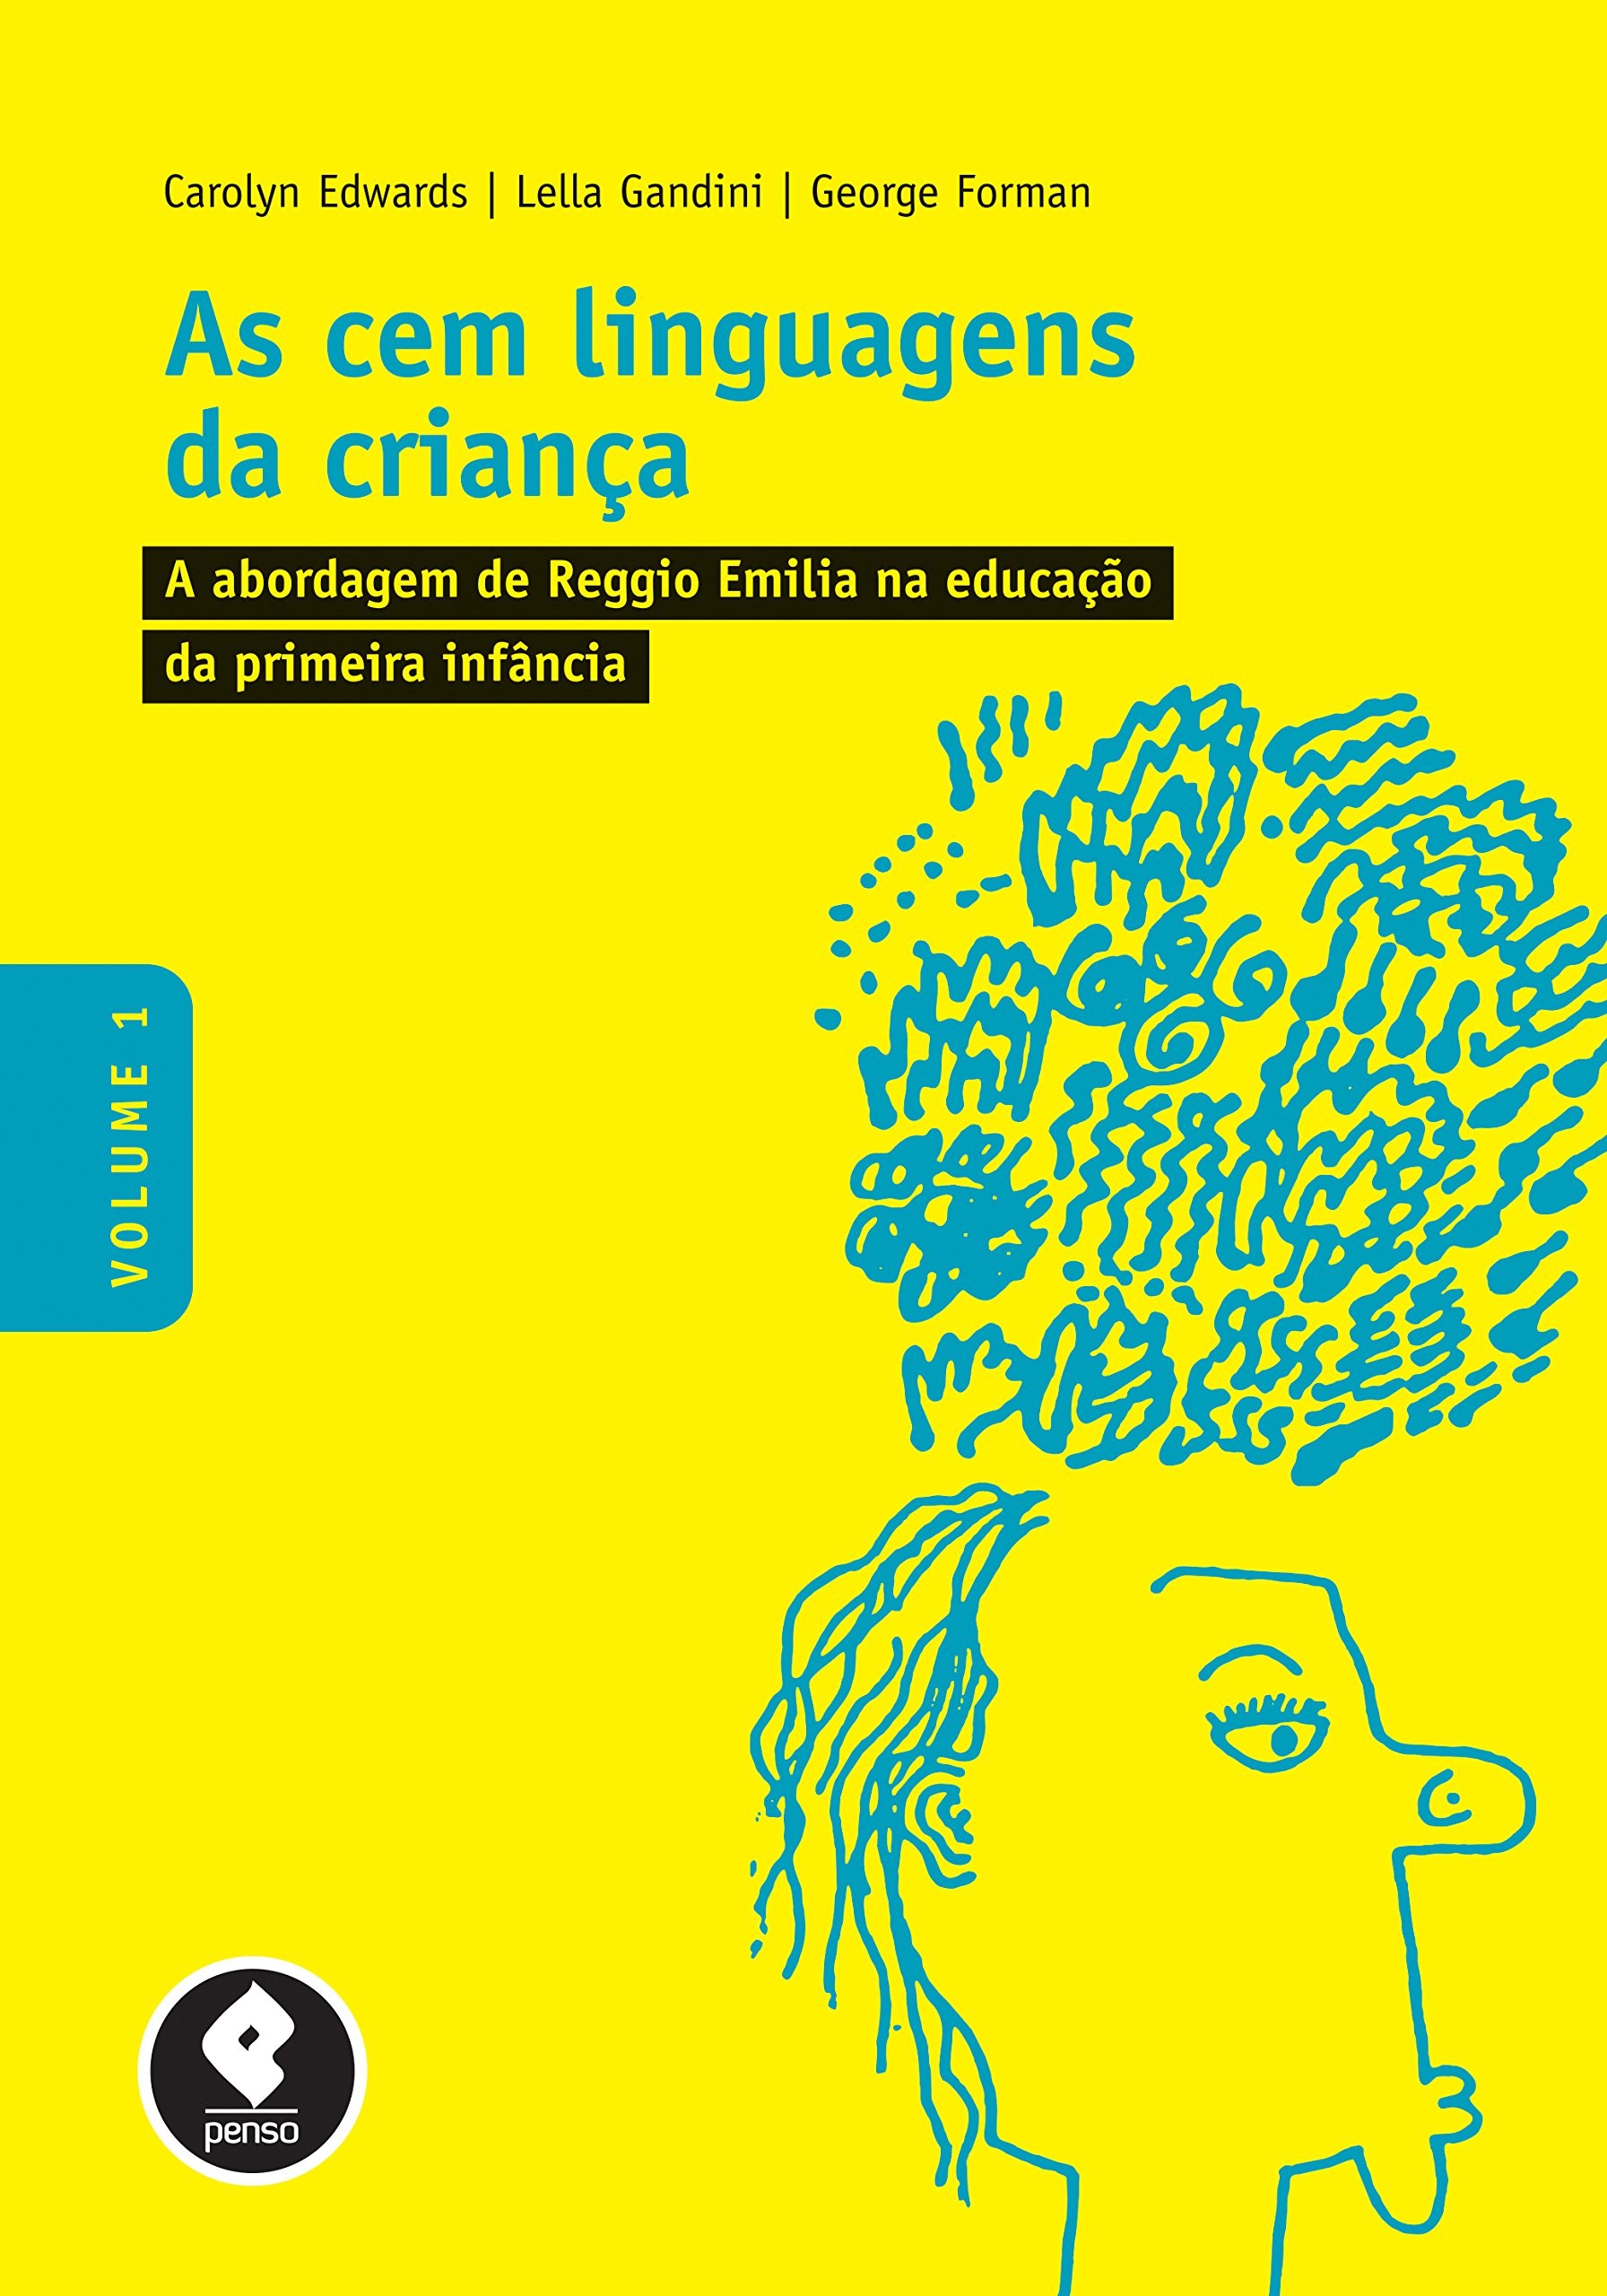 Cem Linguagens da Criança, As - Vol. 1: A Abordagem de Reggio Emilia na Educação da Primeira